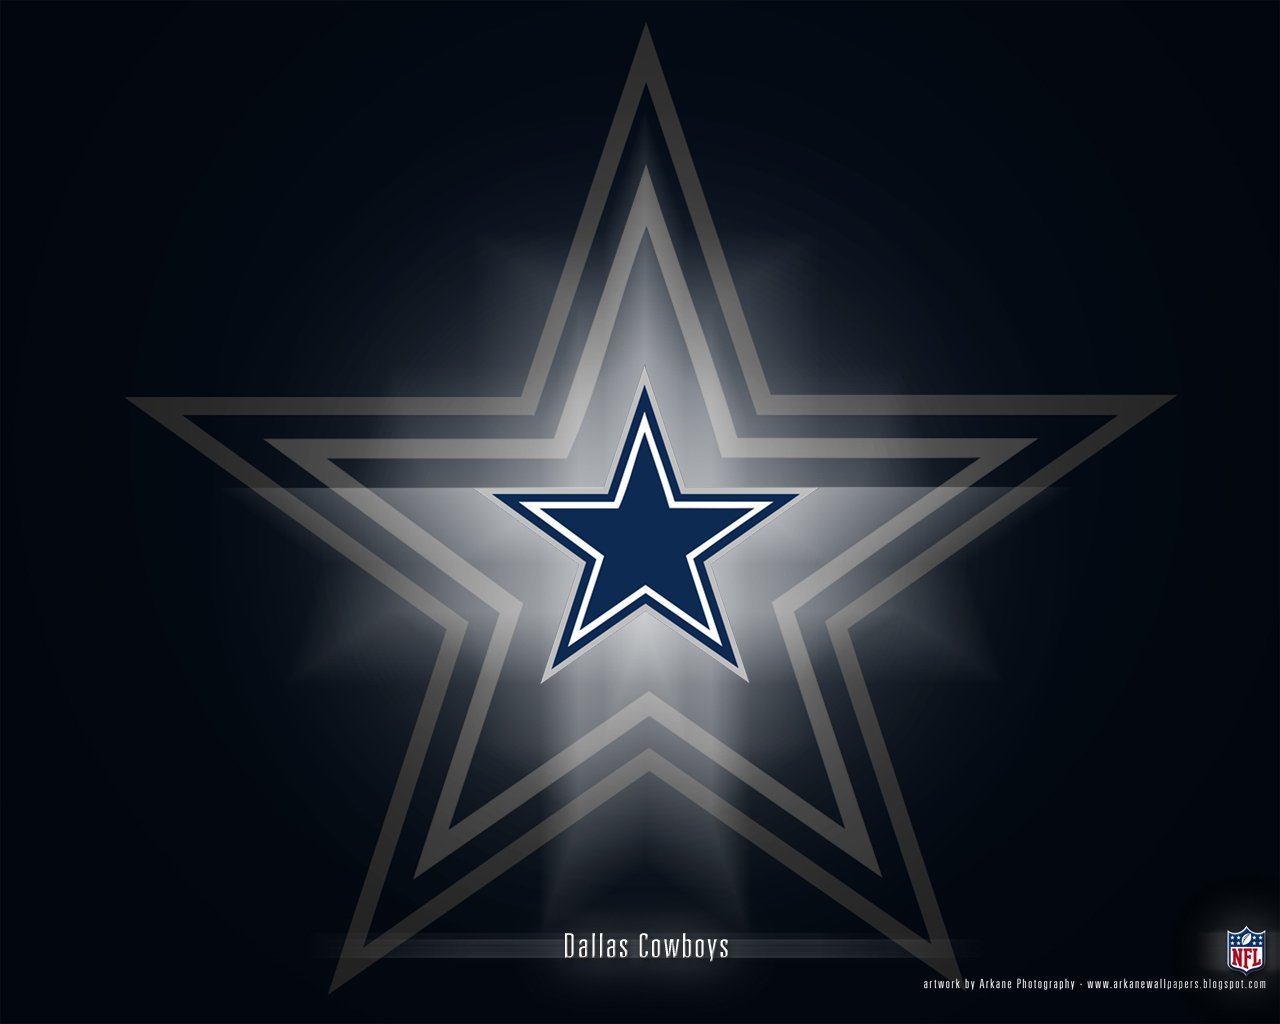 Dallas Cowboys live Wallpaper Immagini